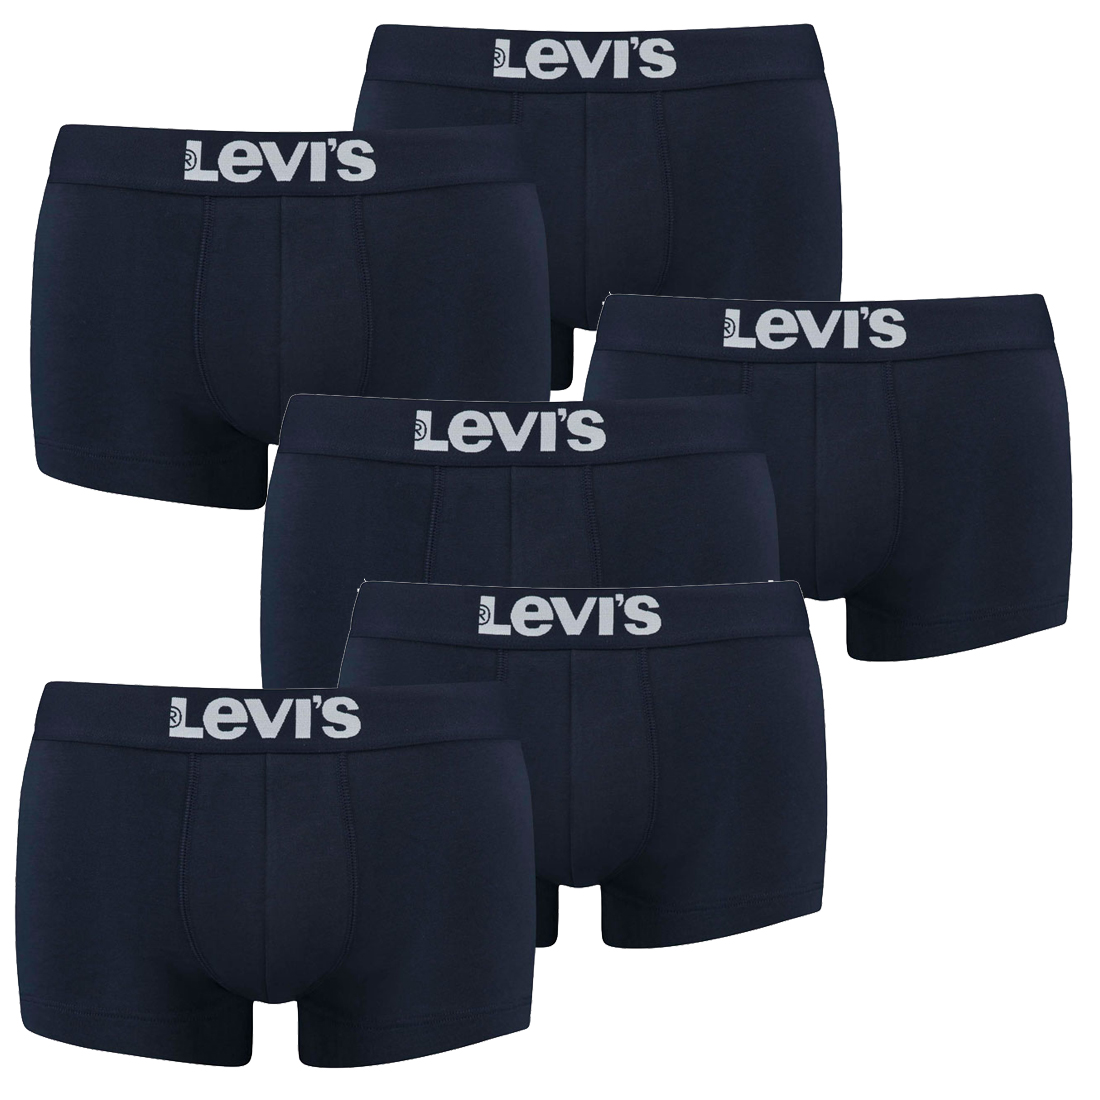 6er Pack Levis Men Solid Basic Trunk Boxershorts Unterhose Pant Unterwäsche